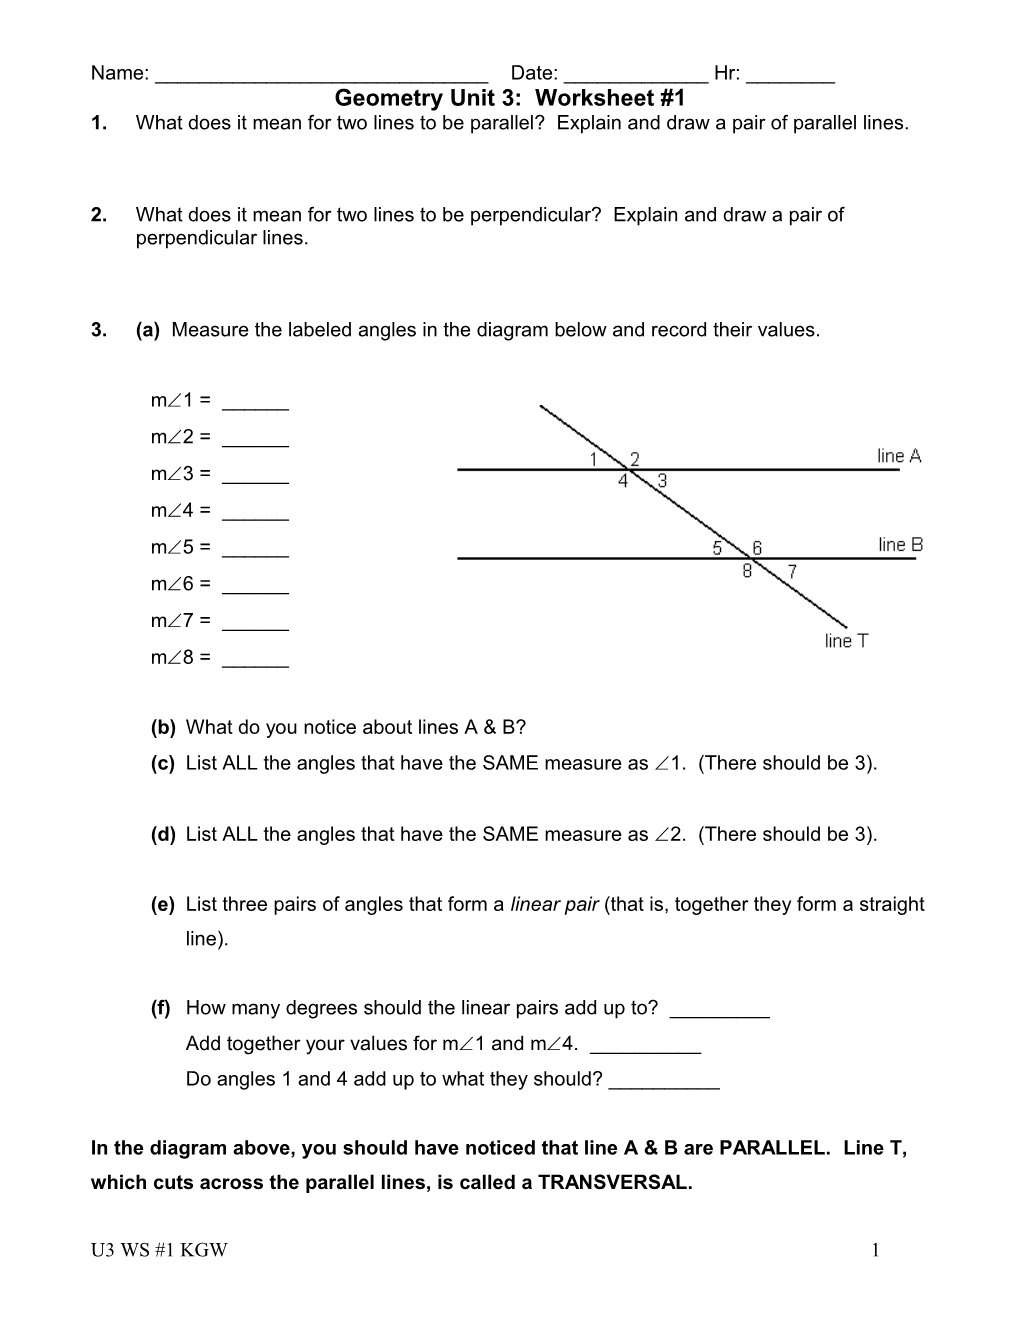 Geometry Unit 3: Worksheet #1